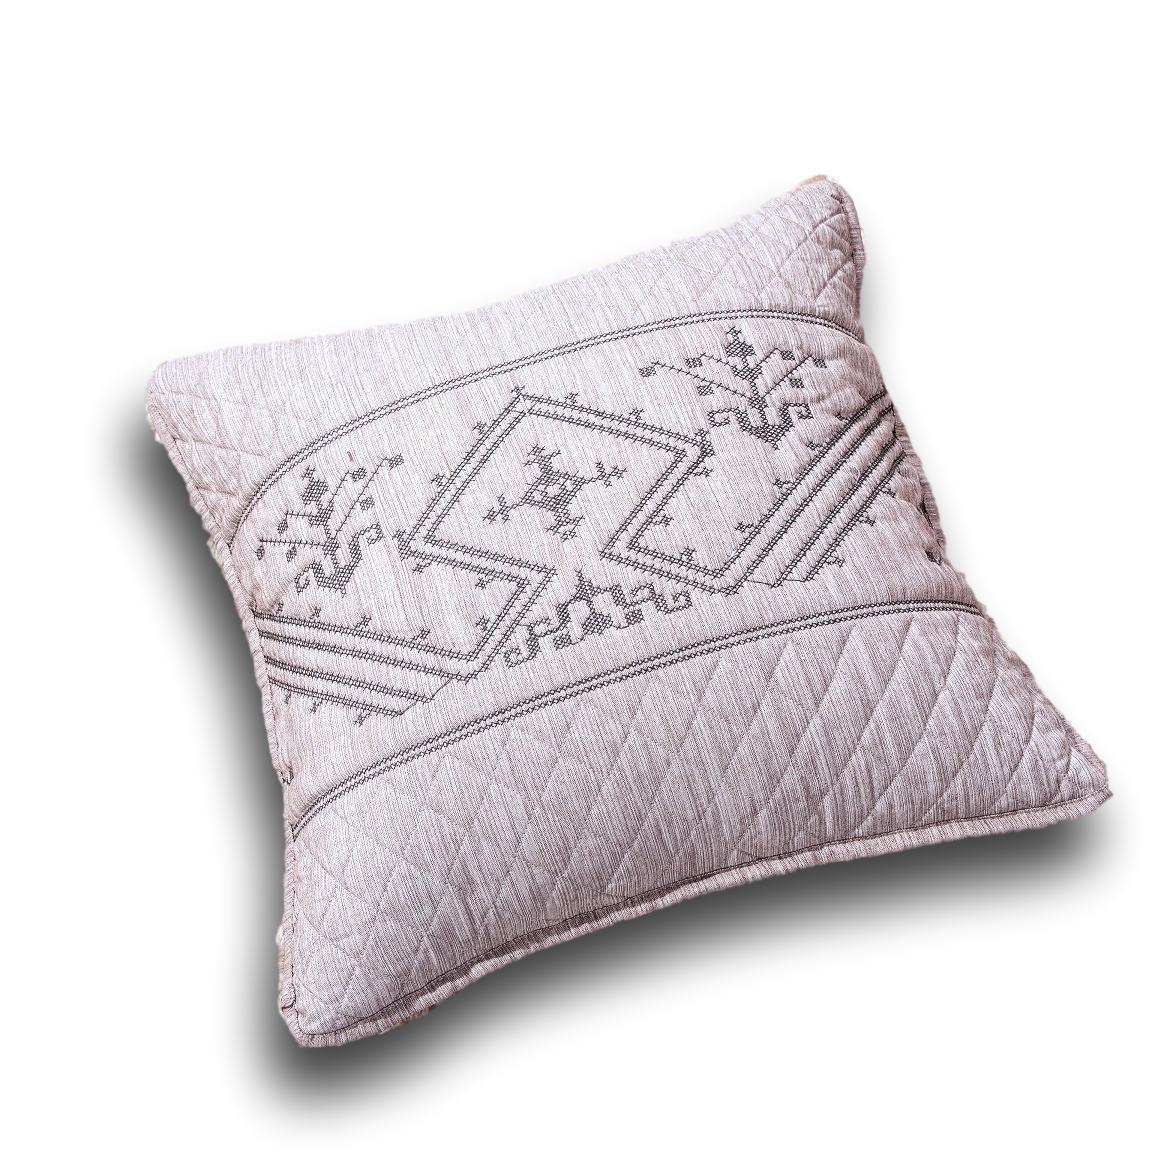 https://www.dadabc.com/cdn/shop/products/cushion-cover-dada-bedding-elegant-fair-isle-purple-grey-yarn-dyed-euro-pillow-sham-cover-26-x-26-jhw866-1_1200x1200.jpeg?v=1564442494